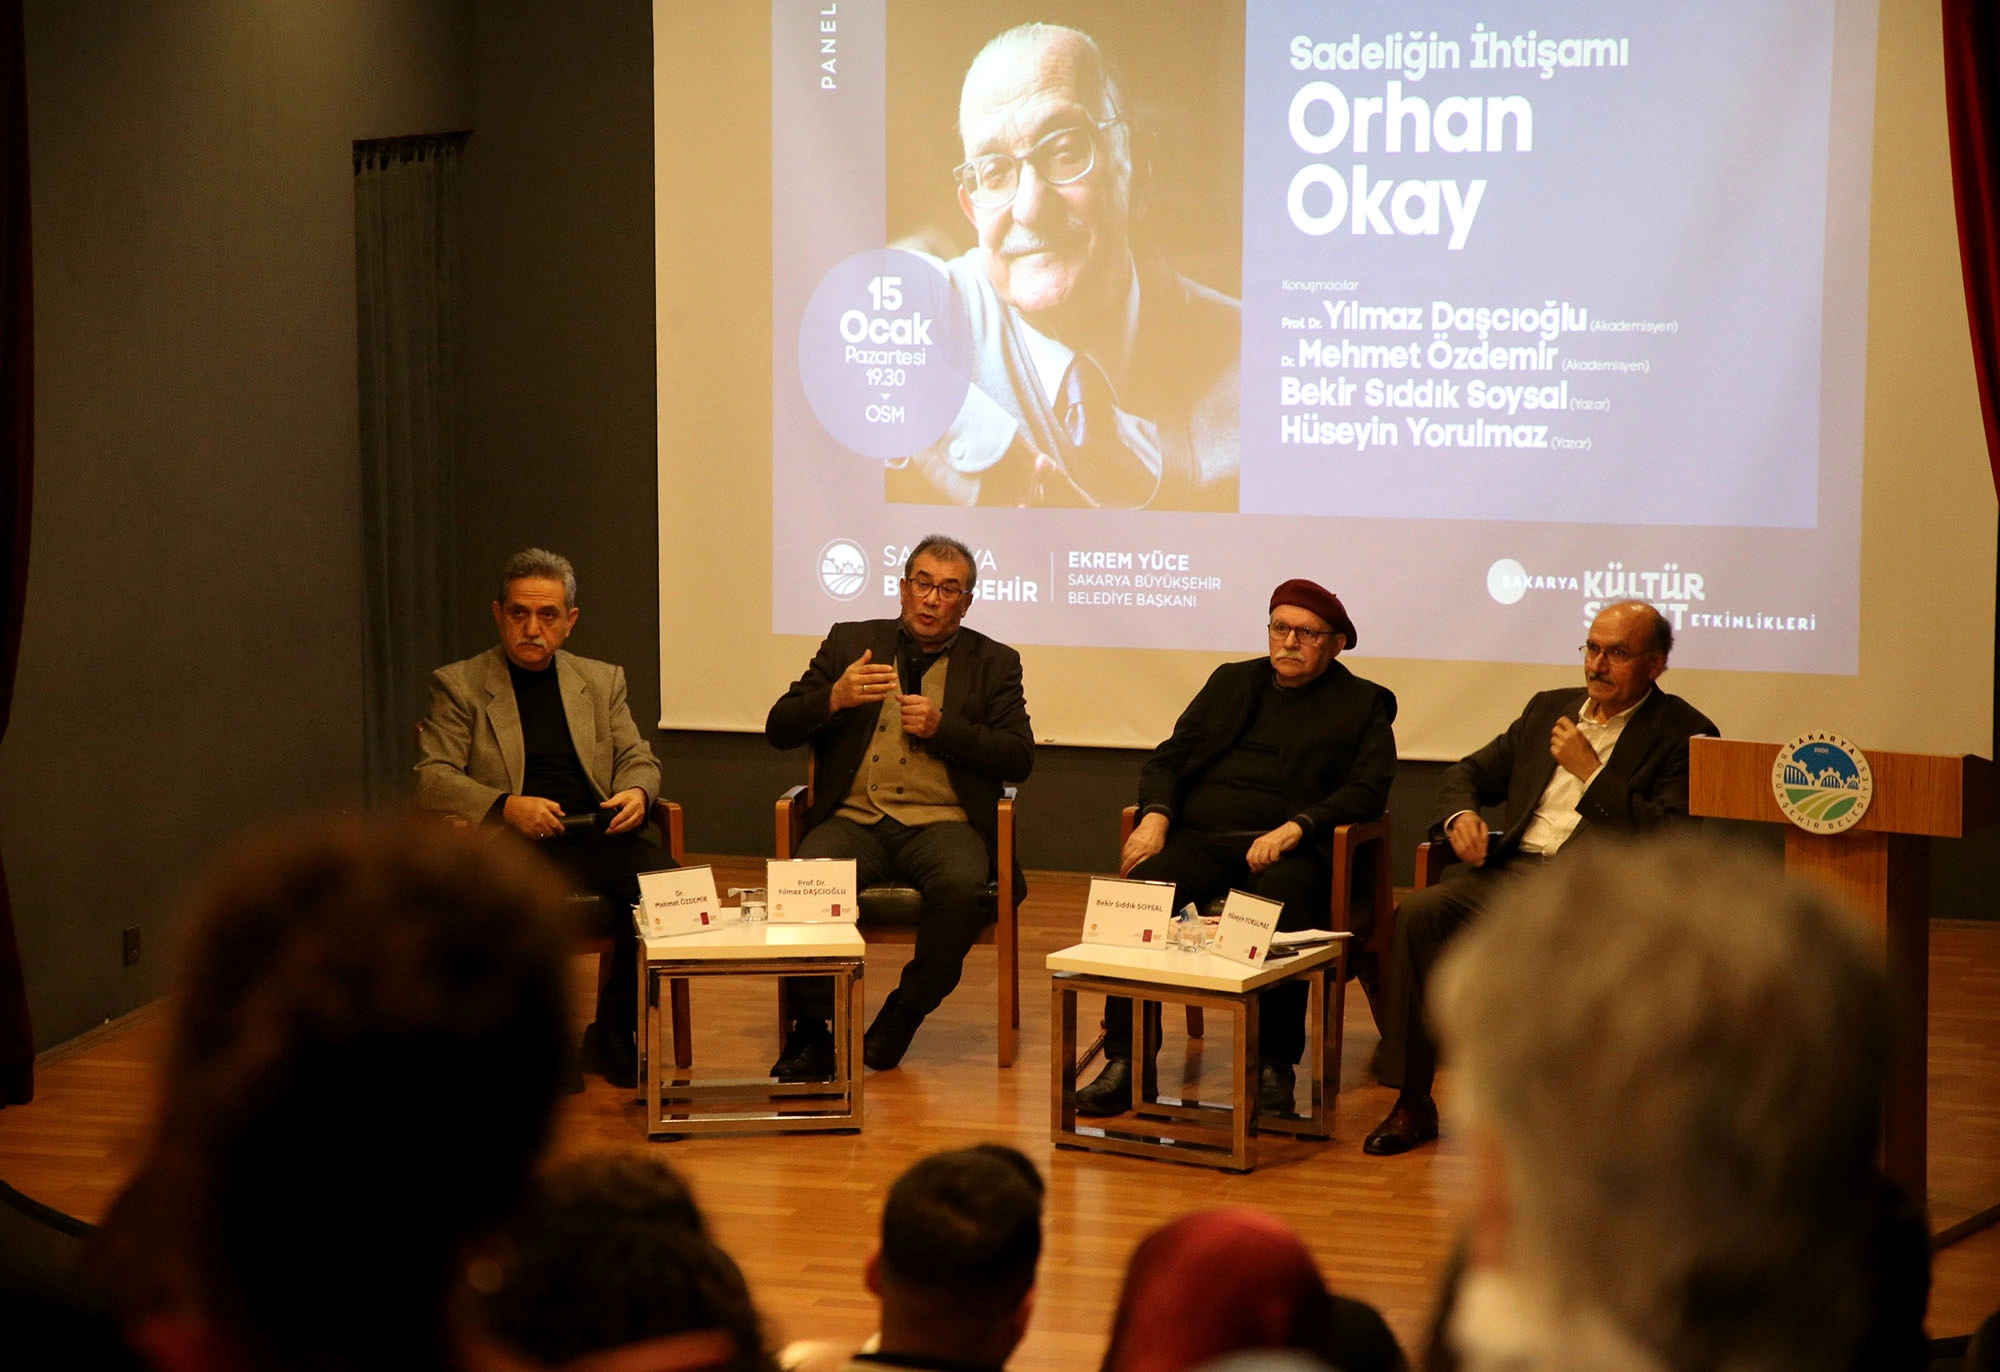  Sakarya Üniversitesi Edebiyat Fakültesi Kurucusu Prof. Dr. Orhan Okay Anıldı